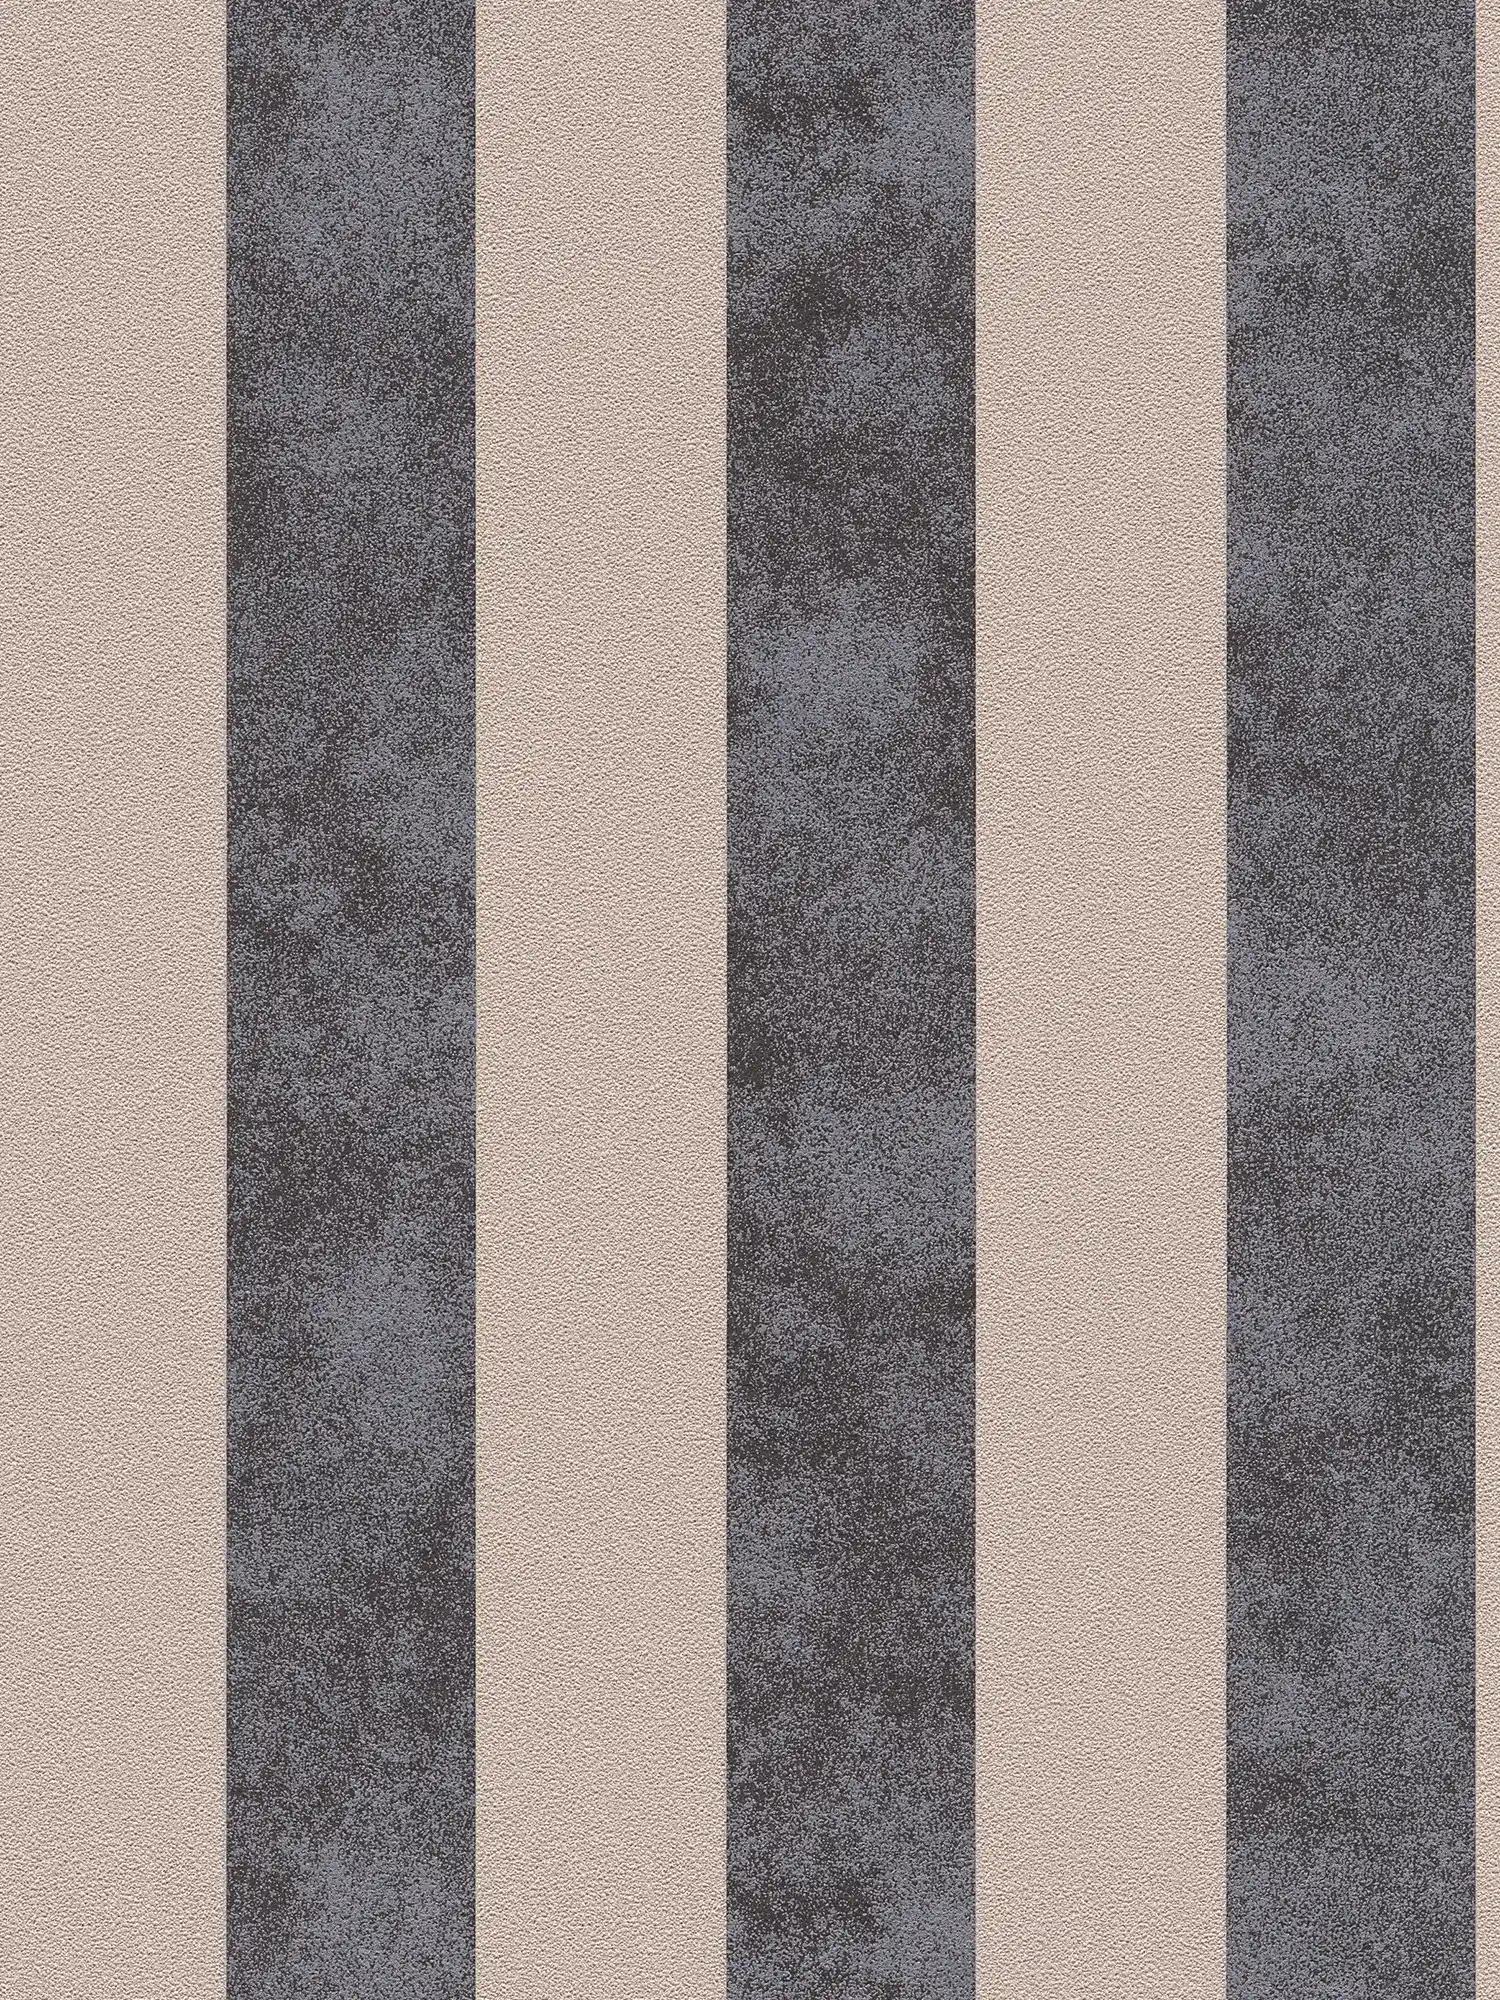         Blockstreifen-Tapete mit Farb- und Strukturmuster – Schwarz, Beige, Silber
    